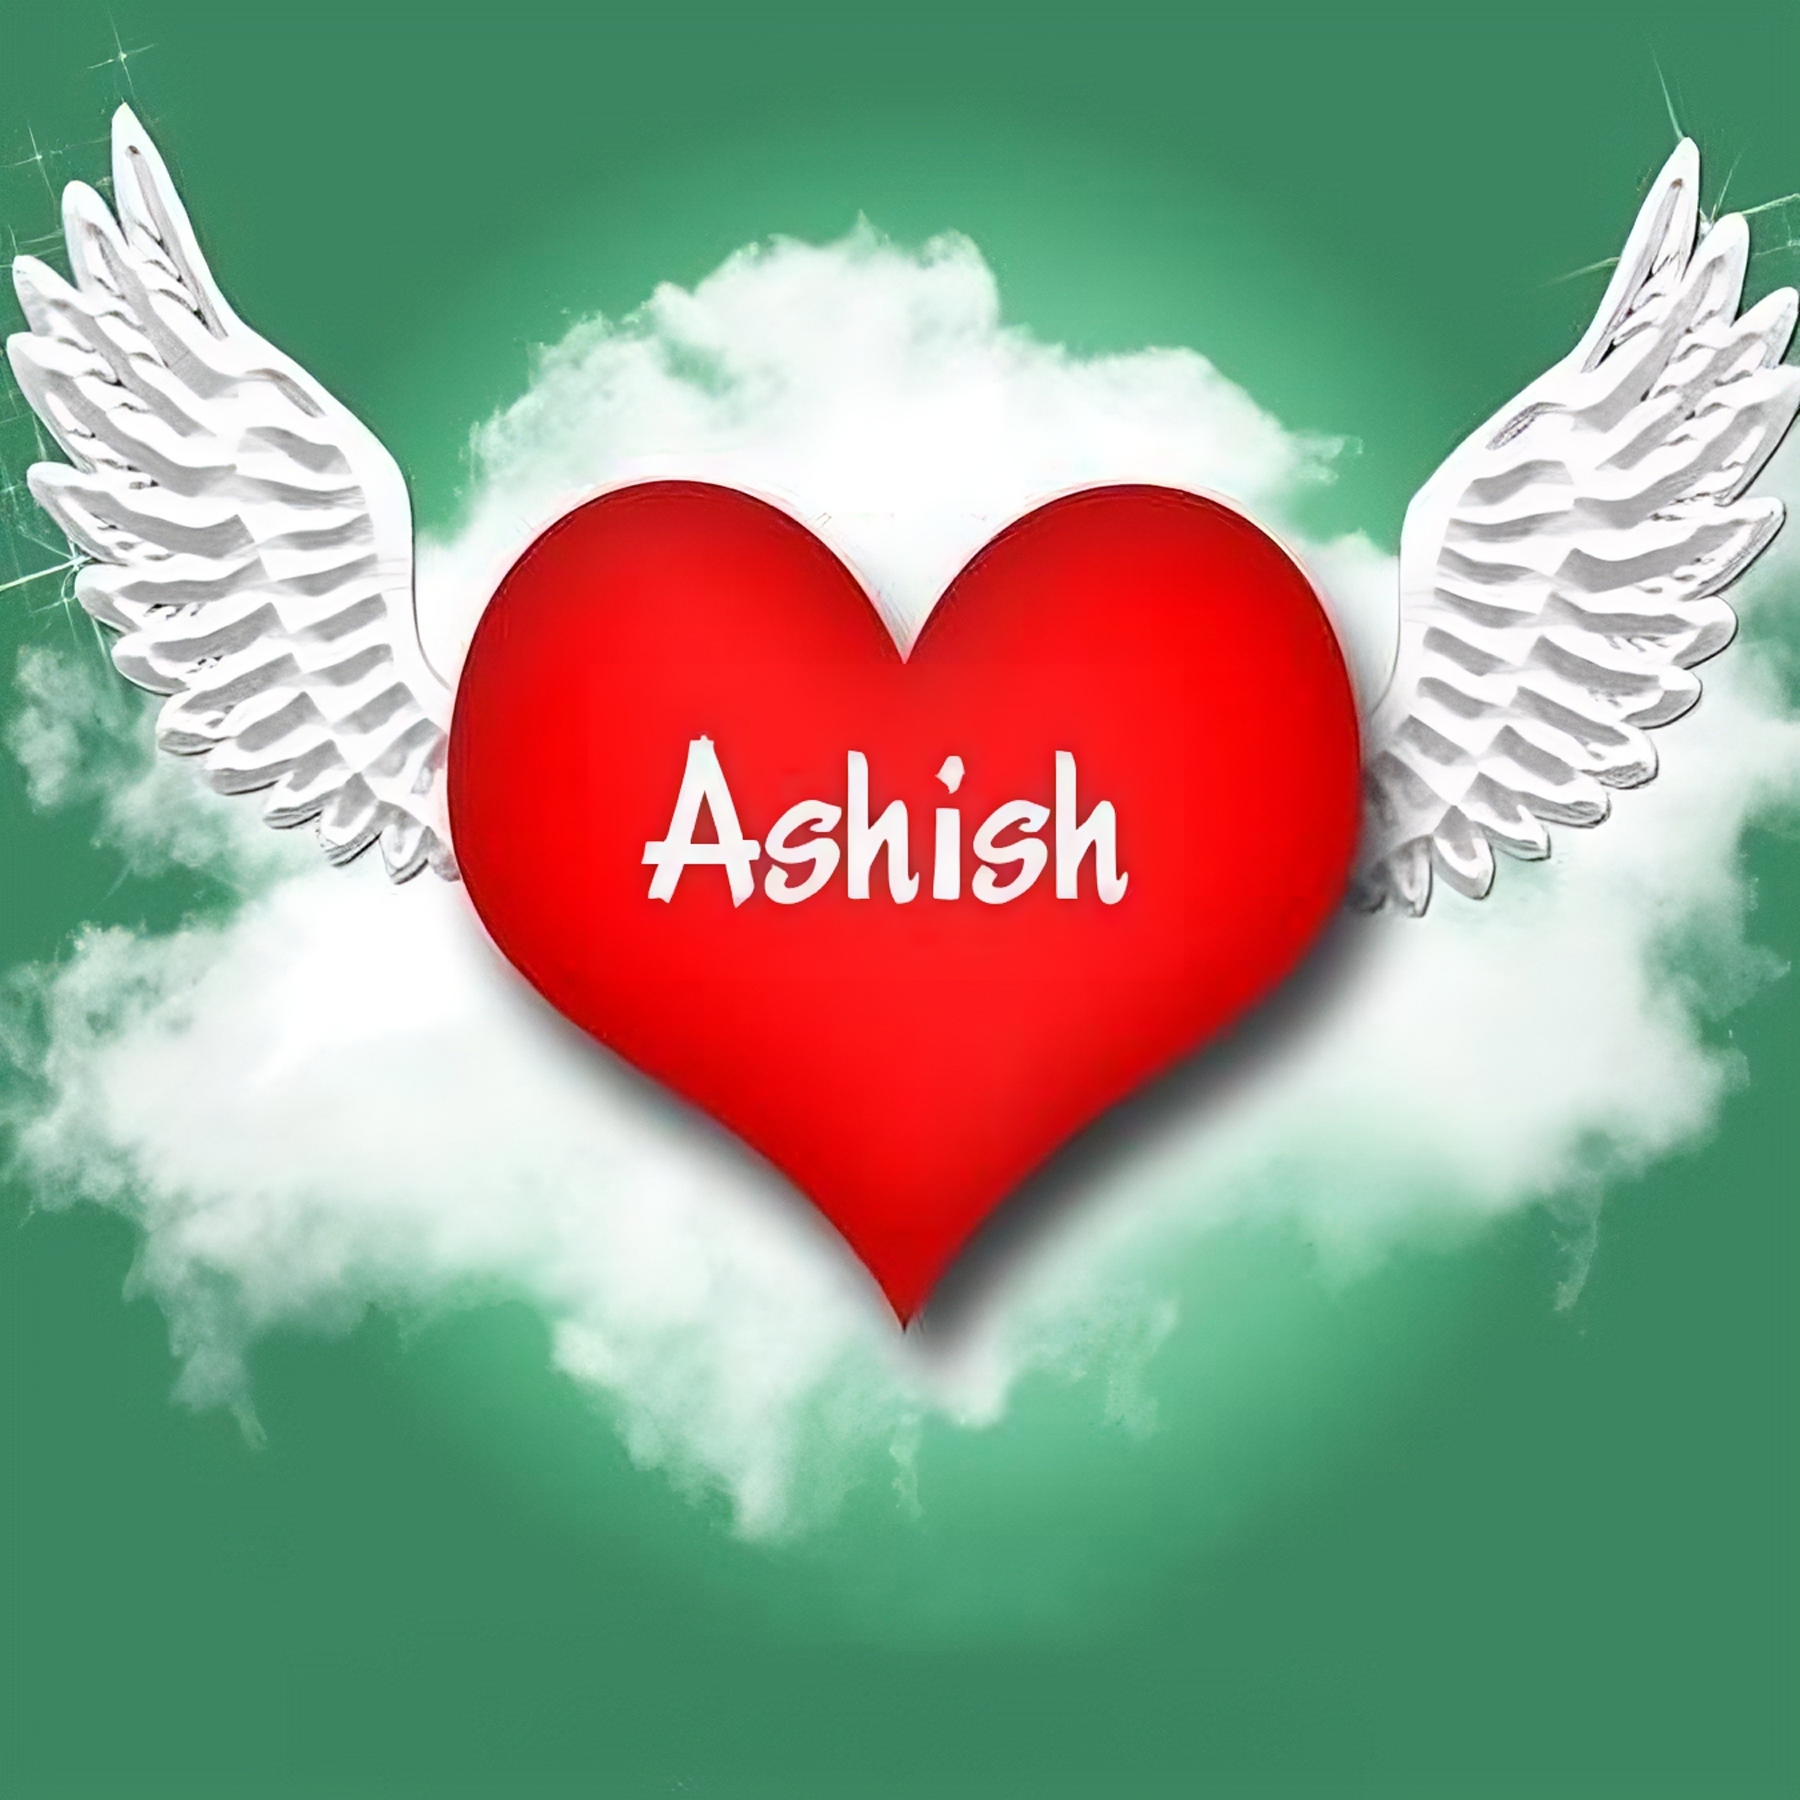 Ashish Name - ashish in heart